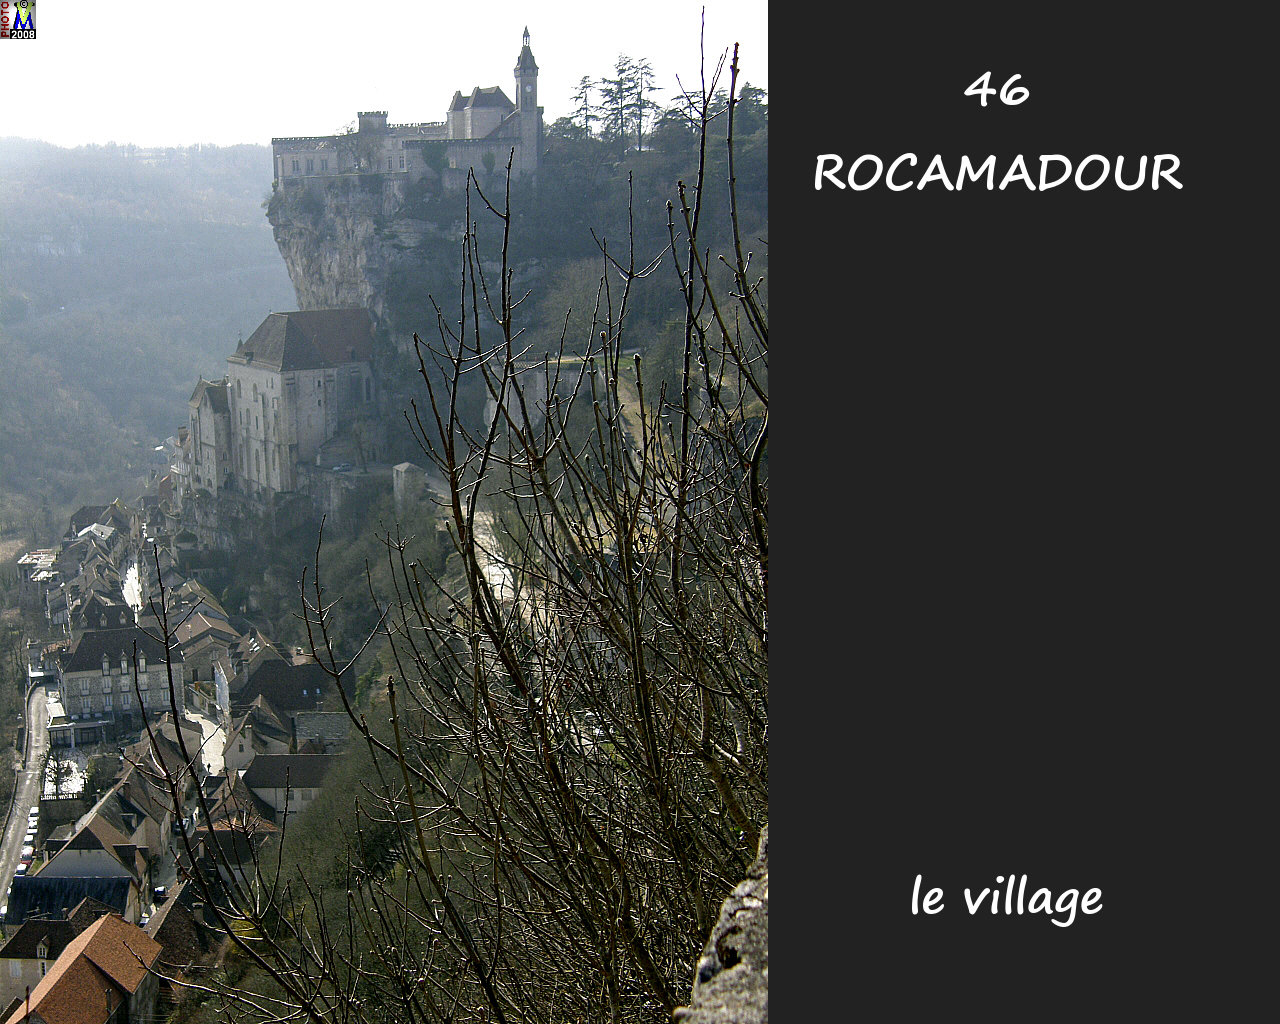 46ROCAMADOUR_village_200.jpg